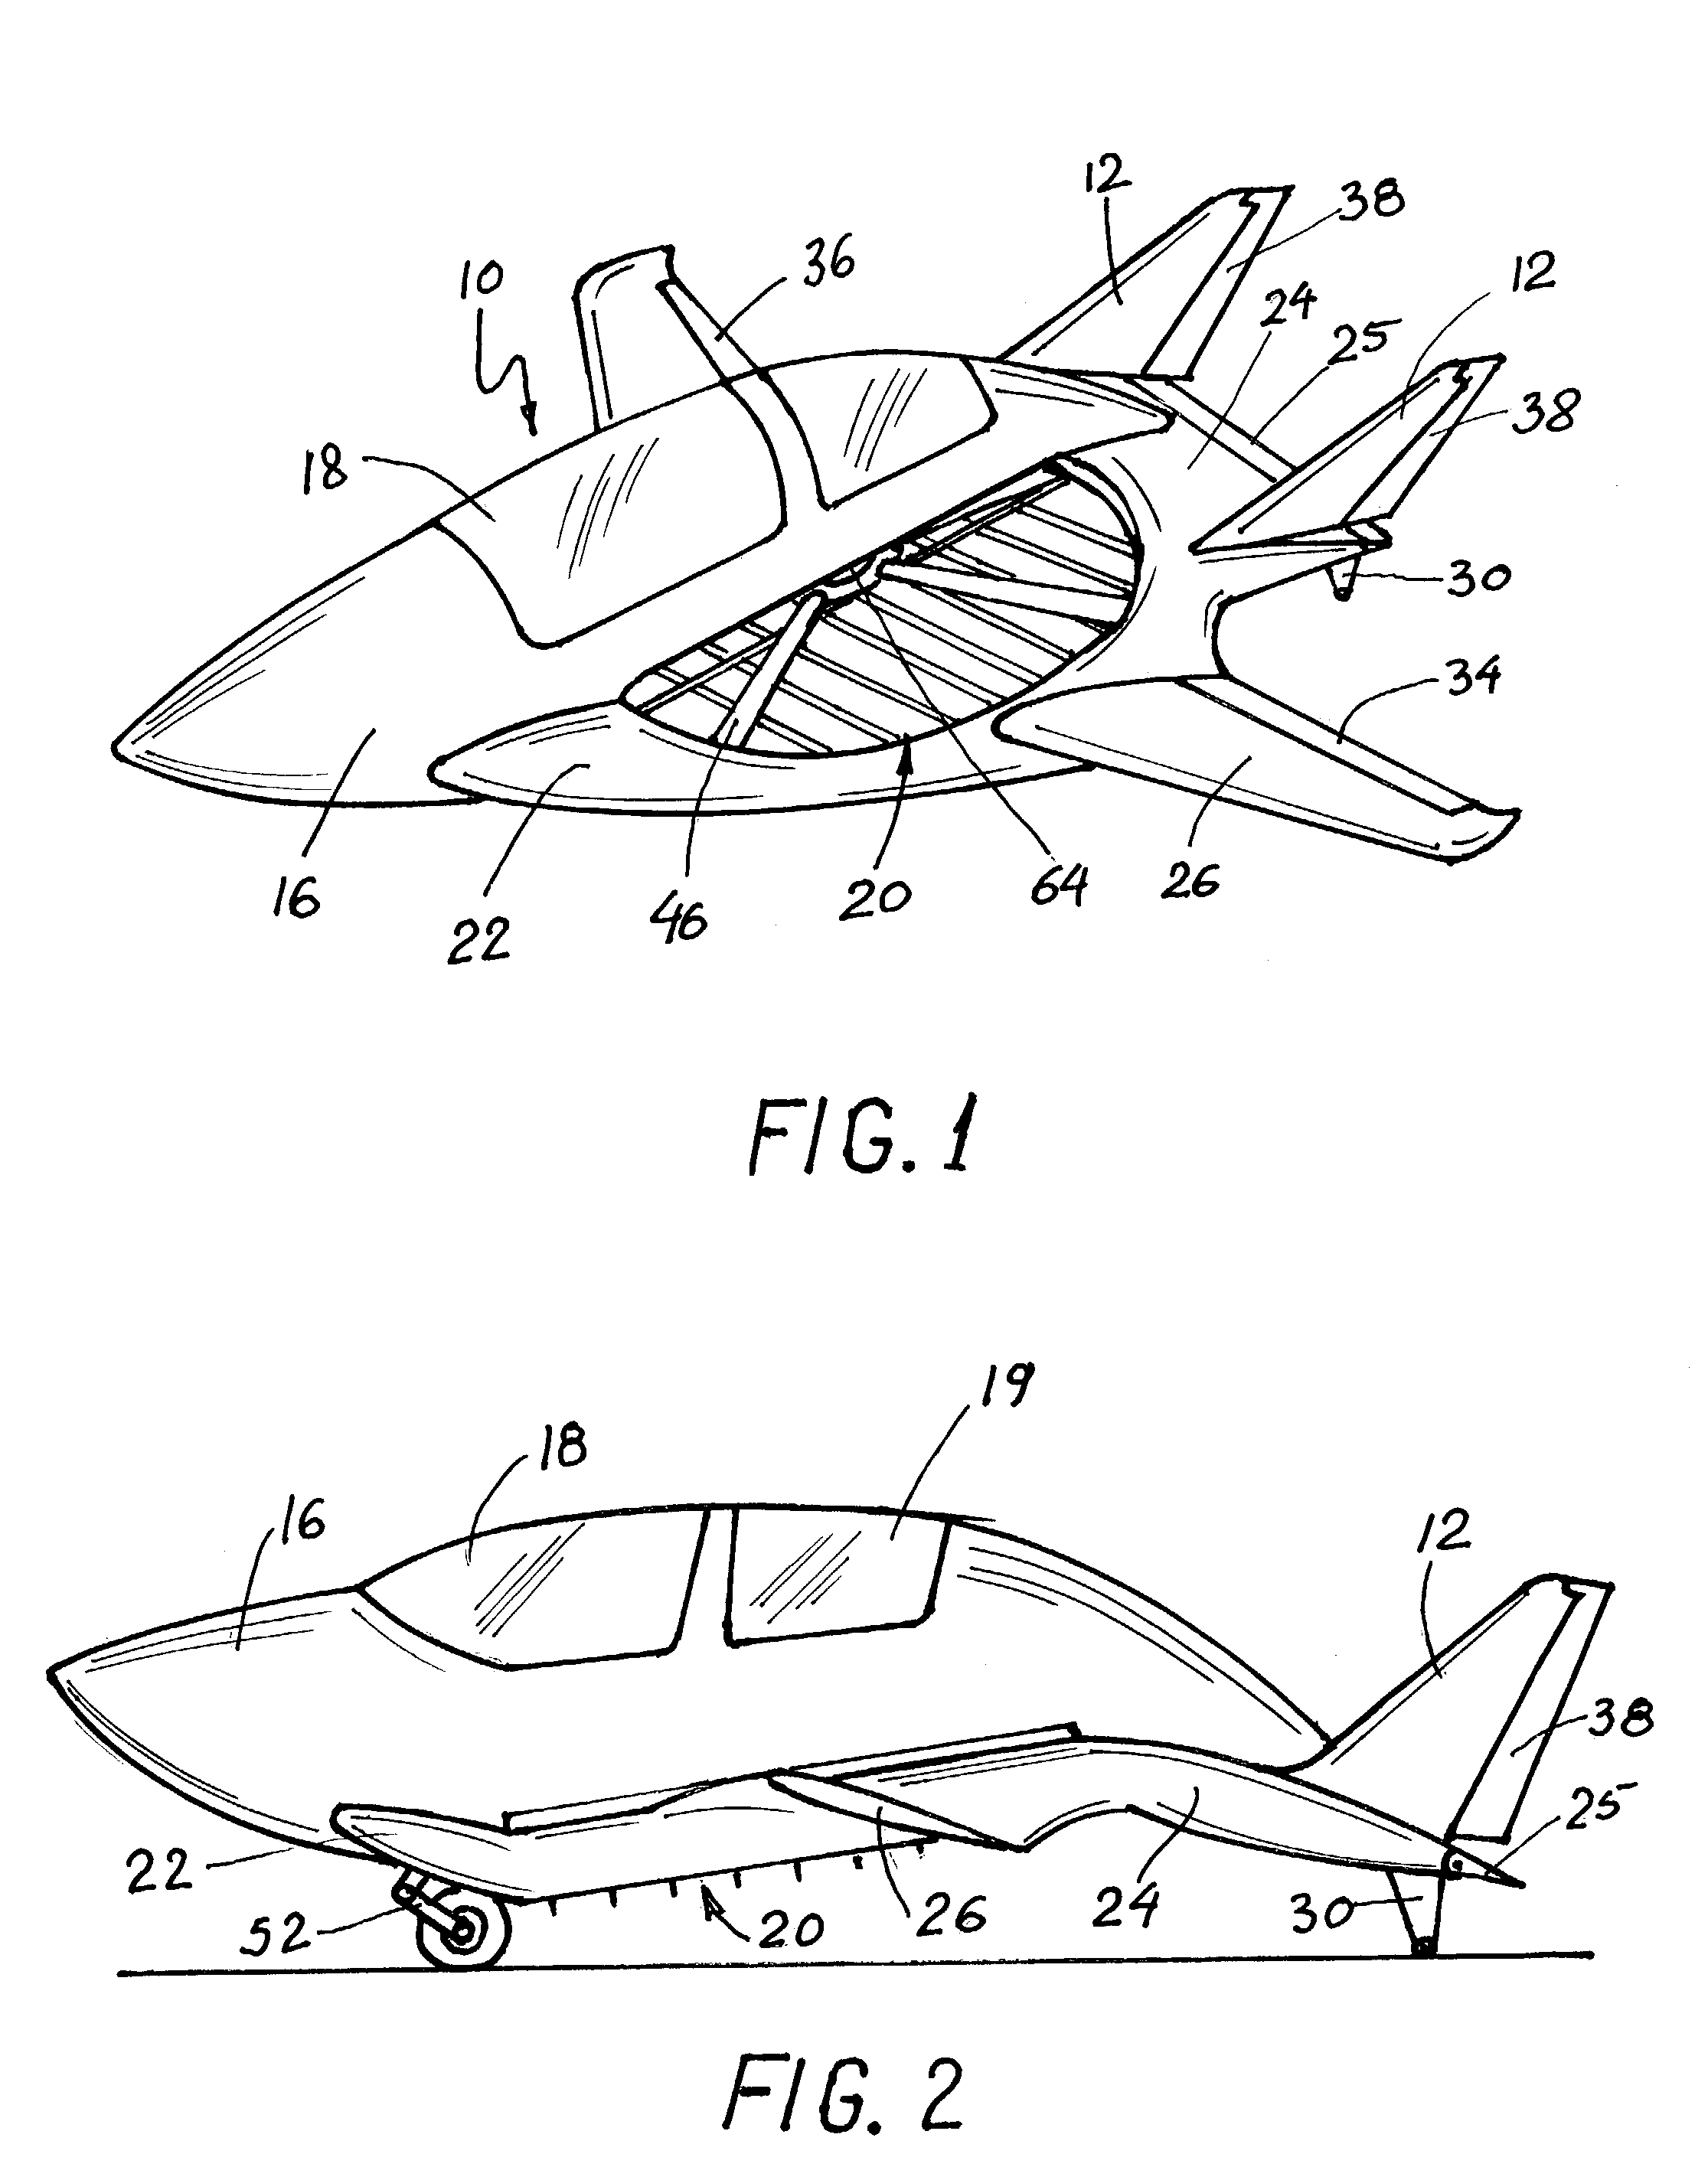 VTOL/STOL ducted propeller aircraft